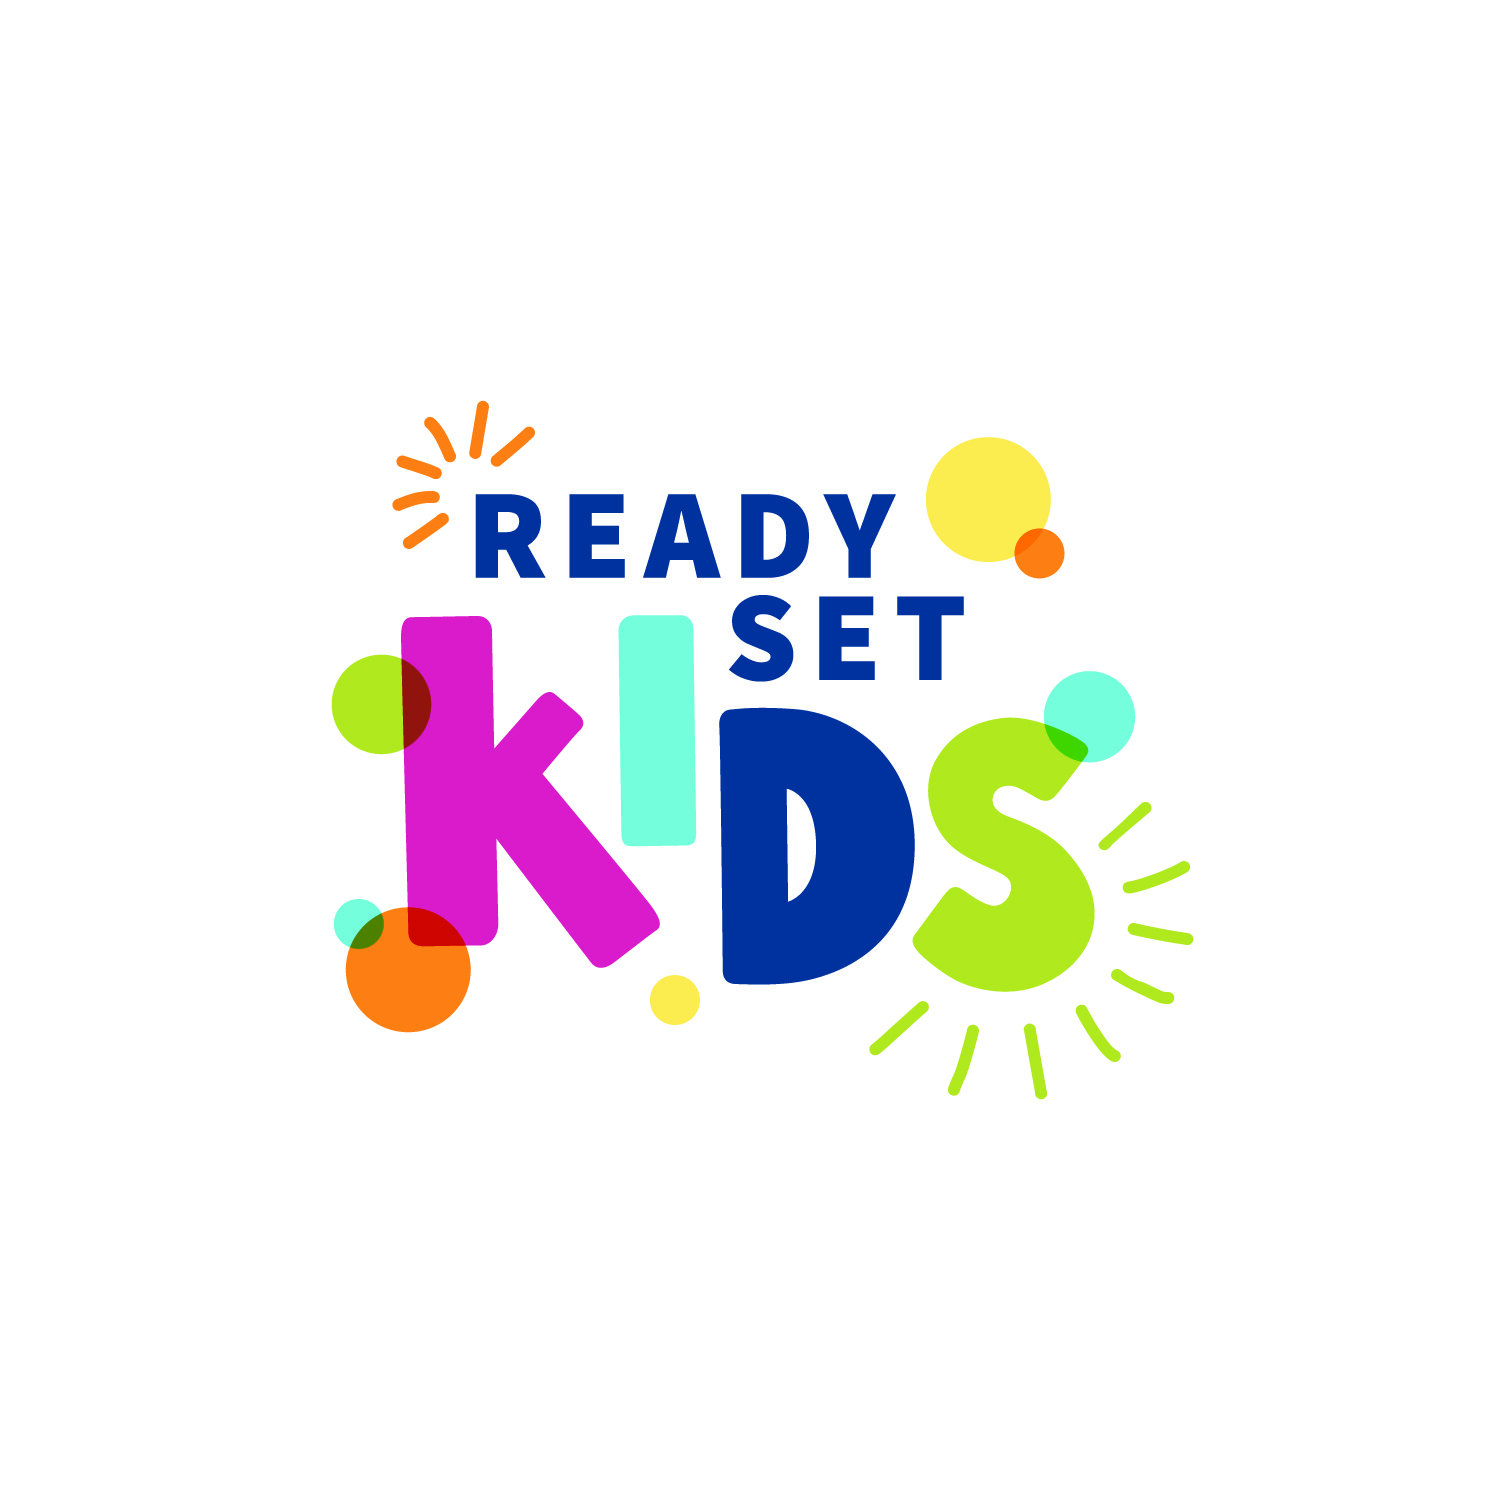 Ready, Set, KIDS!